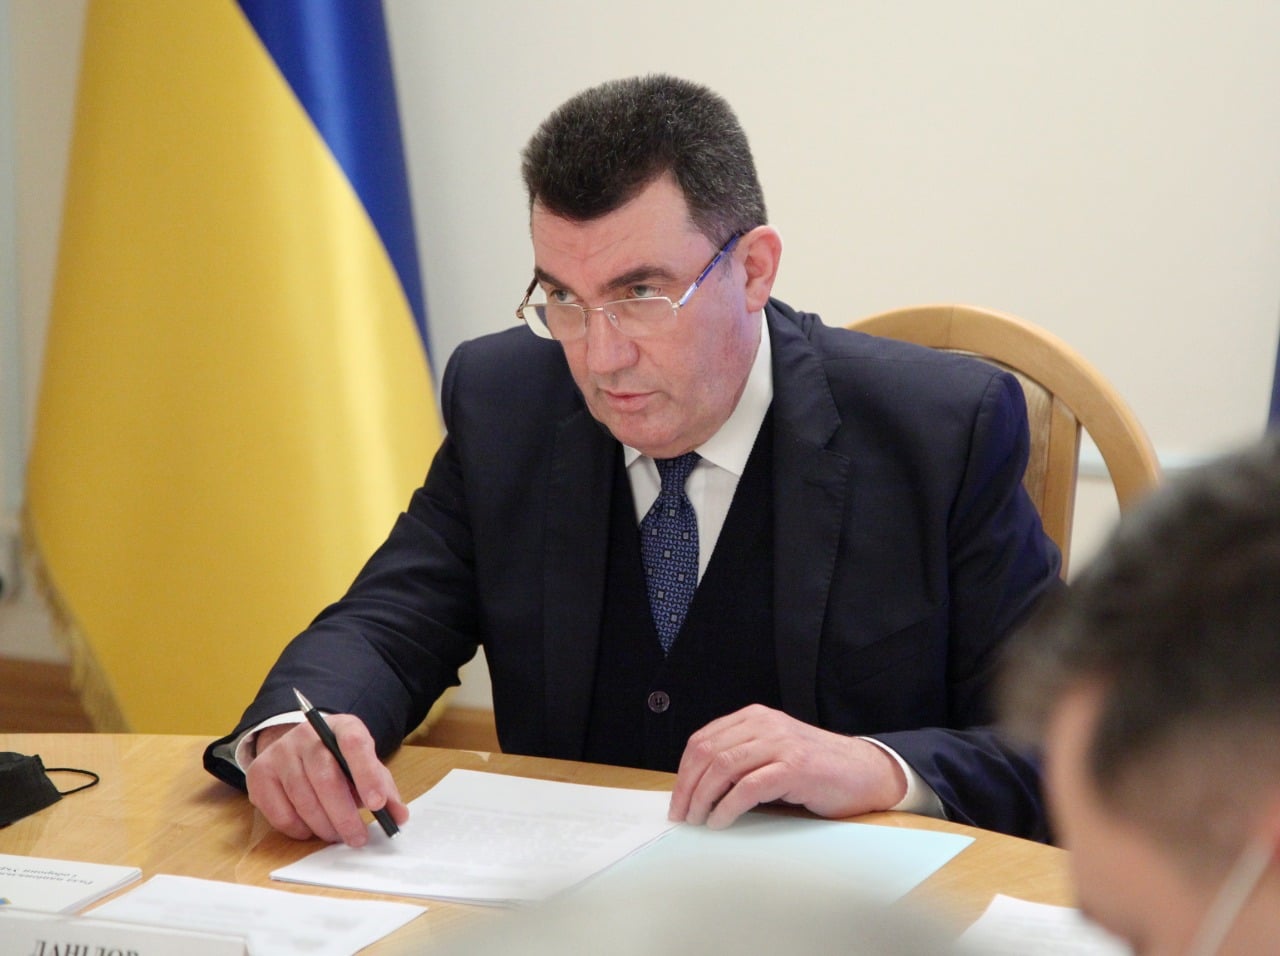 СНБО провел заседание по разработке Стратегии морской безопасности Украины